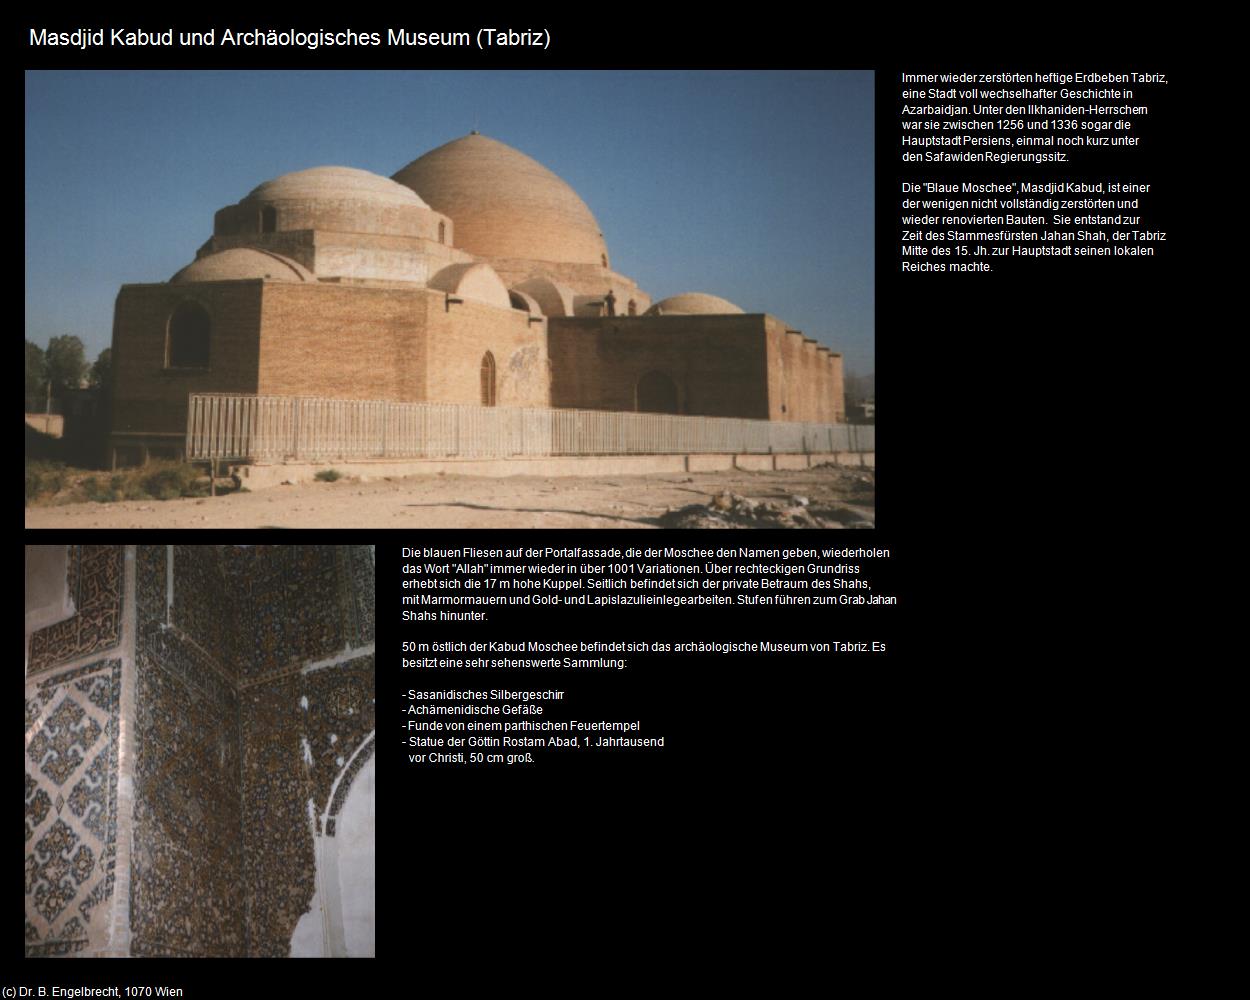 Masdjid Kabud und Archäologisches Museum (Tabriz) in Iran